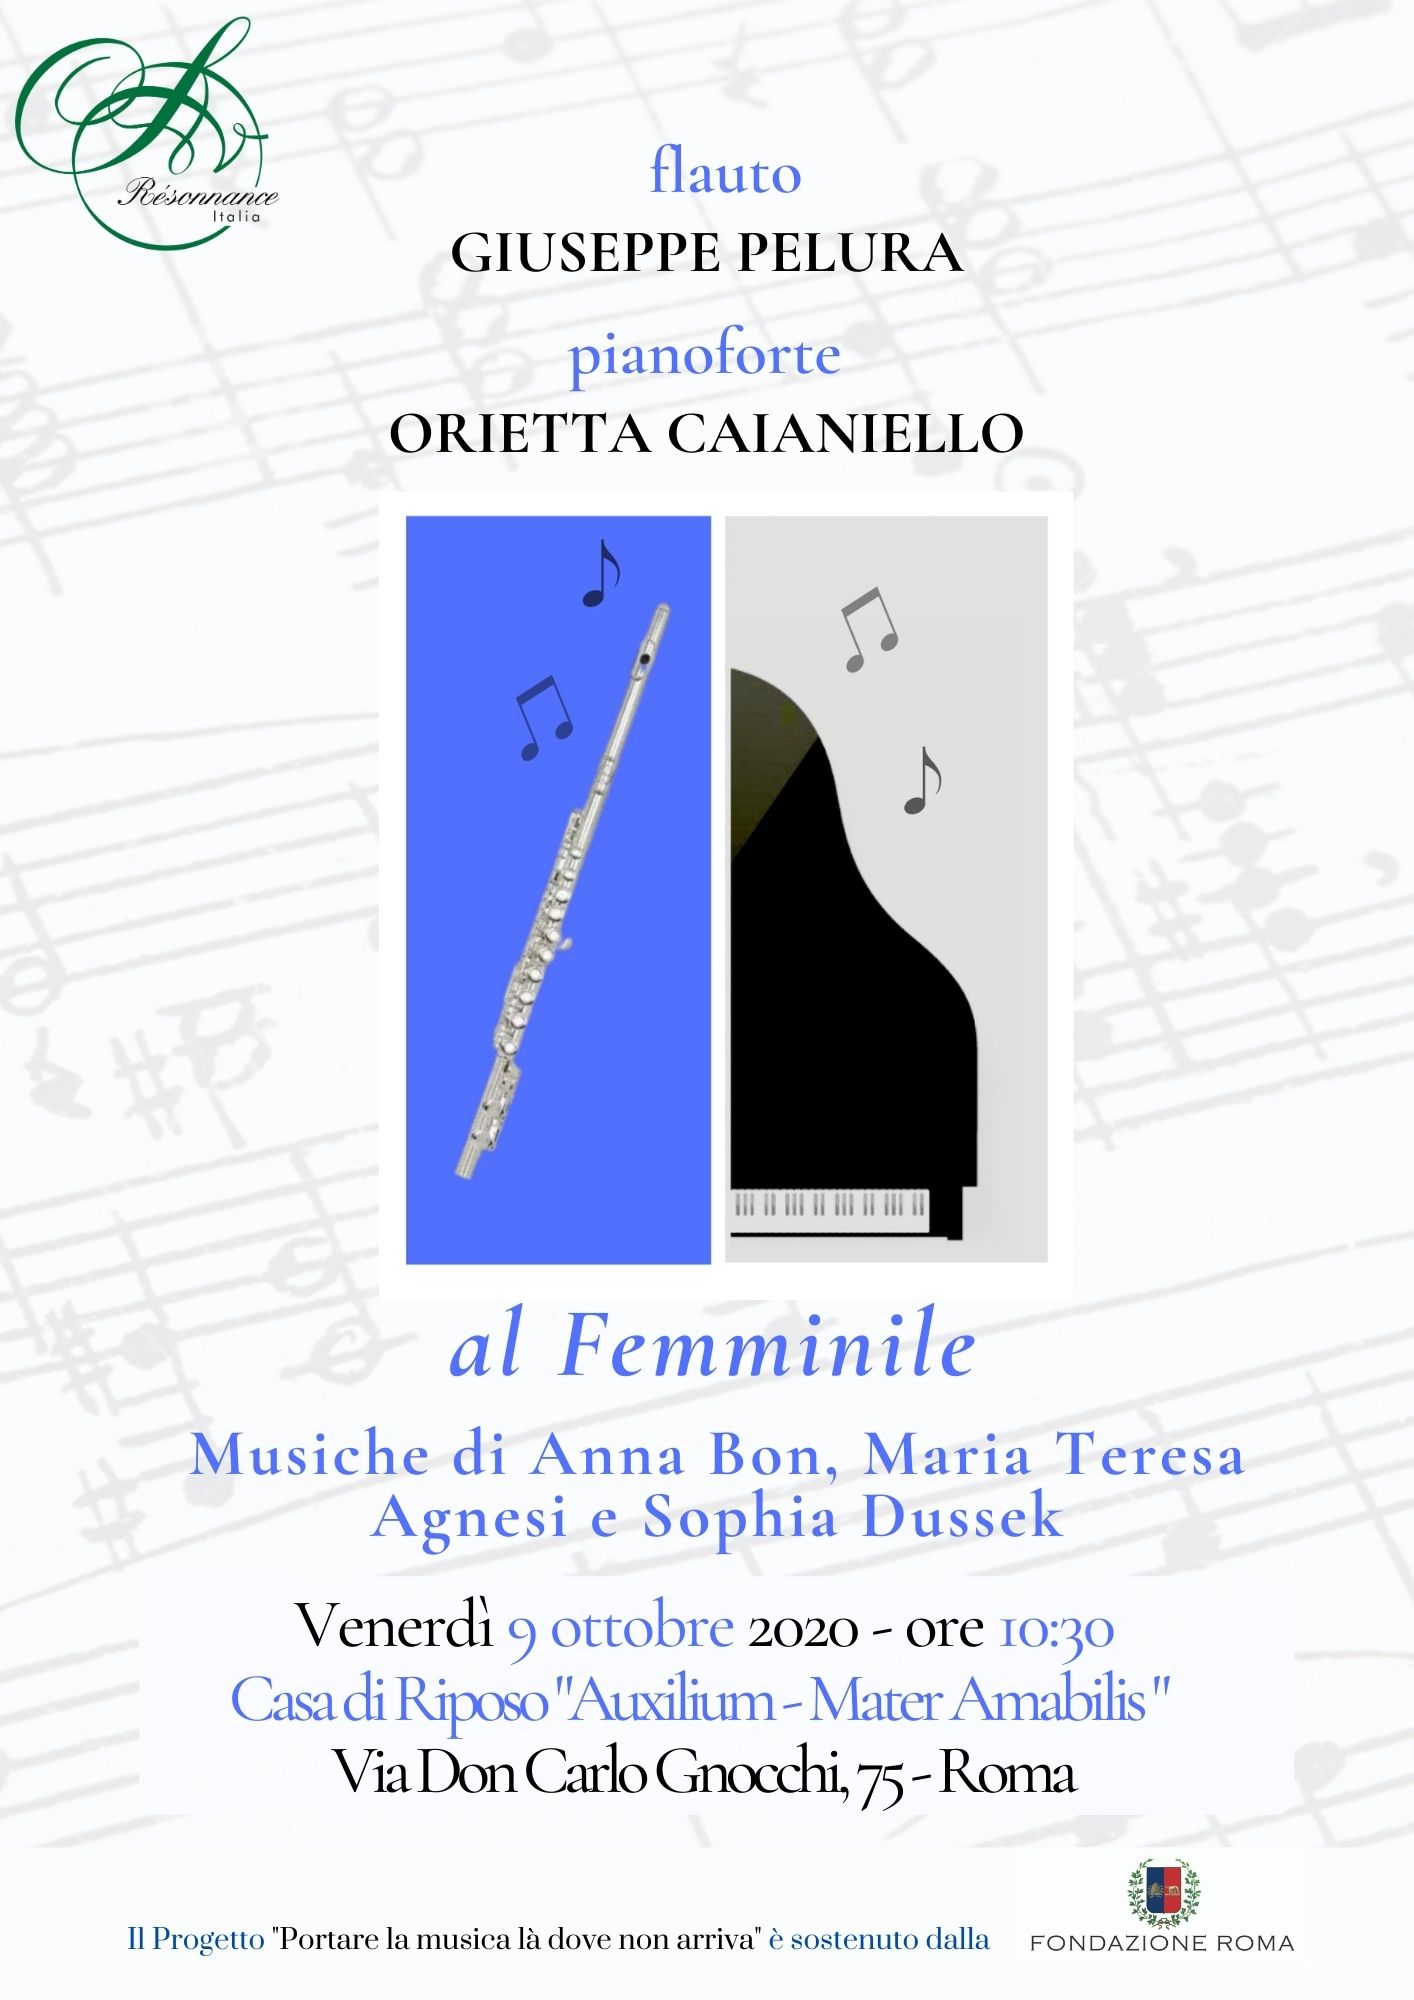 "al Femminile". Concerto di Orietta Caianiello e Giuseppe Pelura